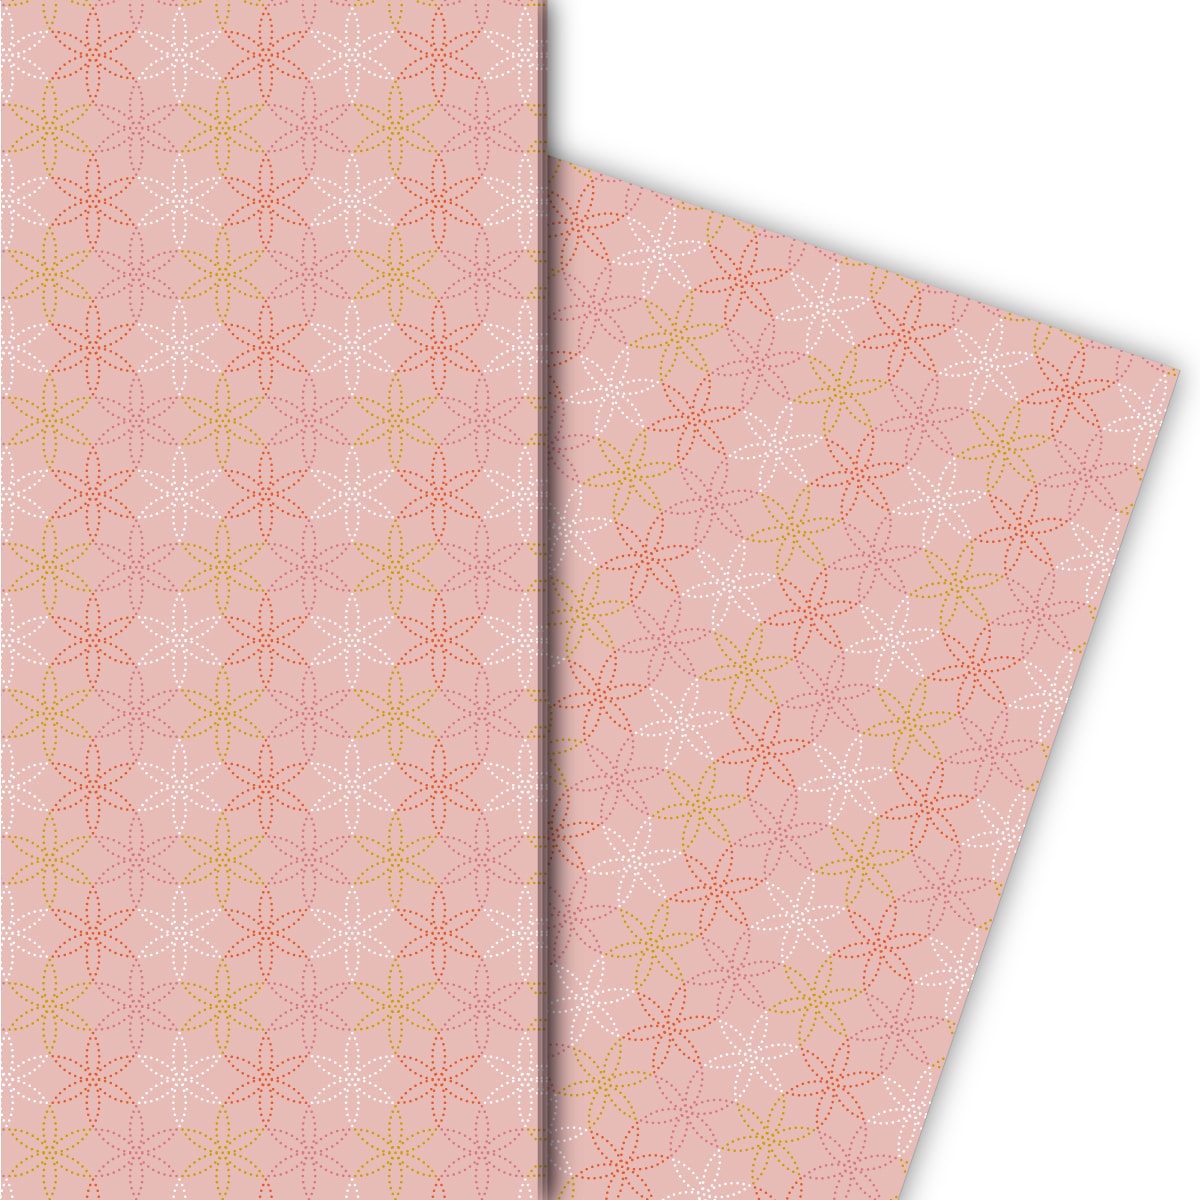 Kartenkaufrausch: Schönes Geschenkpapier mit gepunkteten aus unserer florale Papeterie in rosa